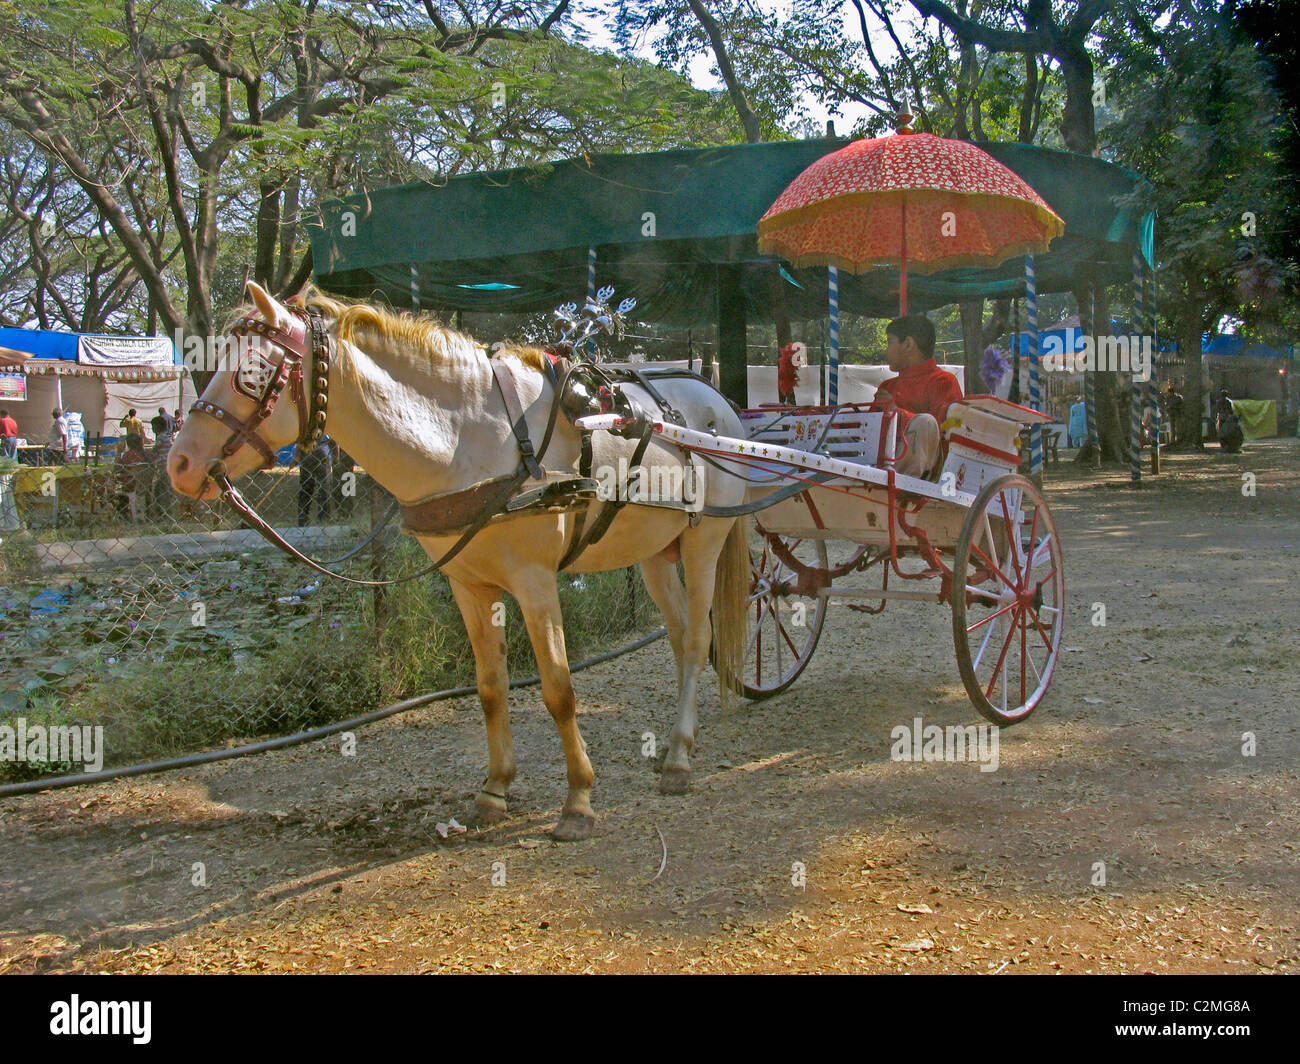 A Horse cart in a garden, Empress garden, Pune, Maharashtra, India Stock Photo